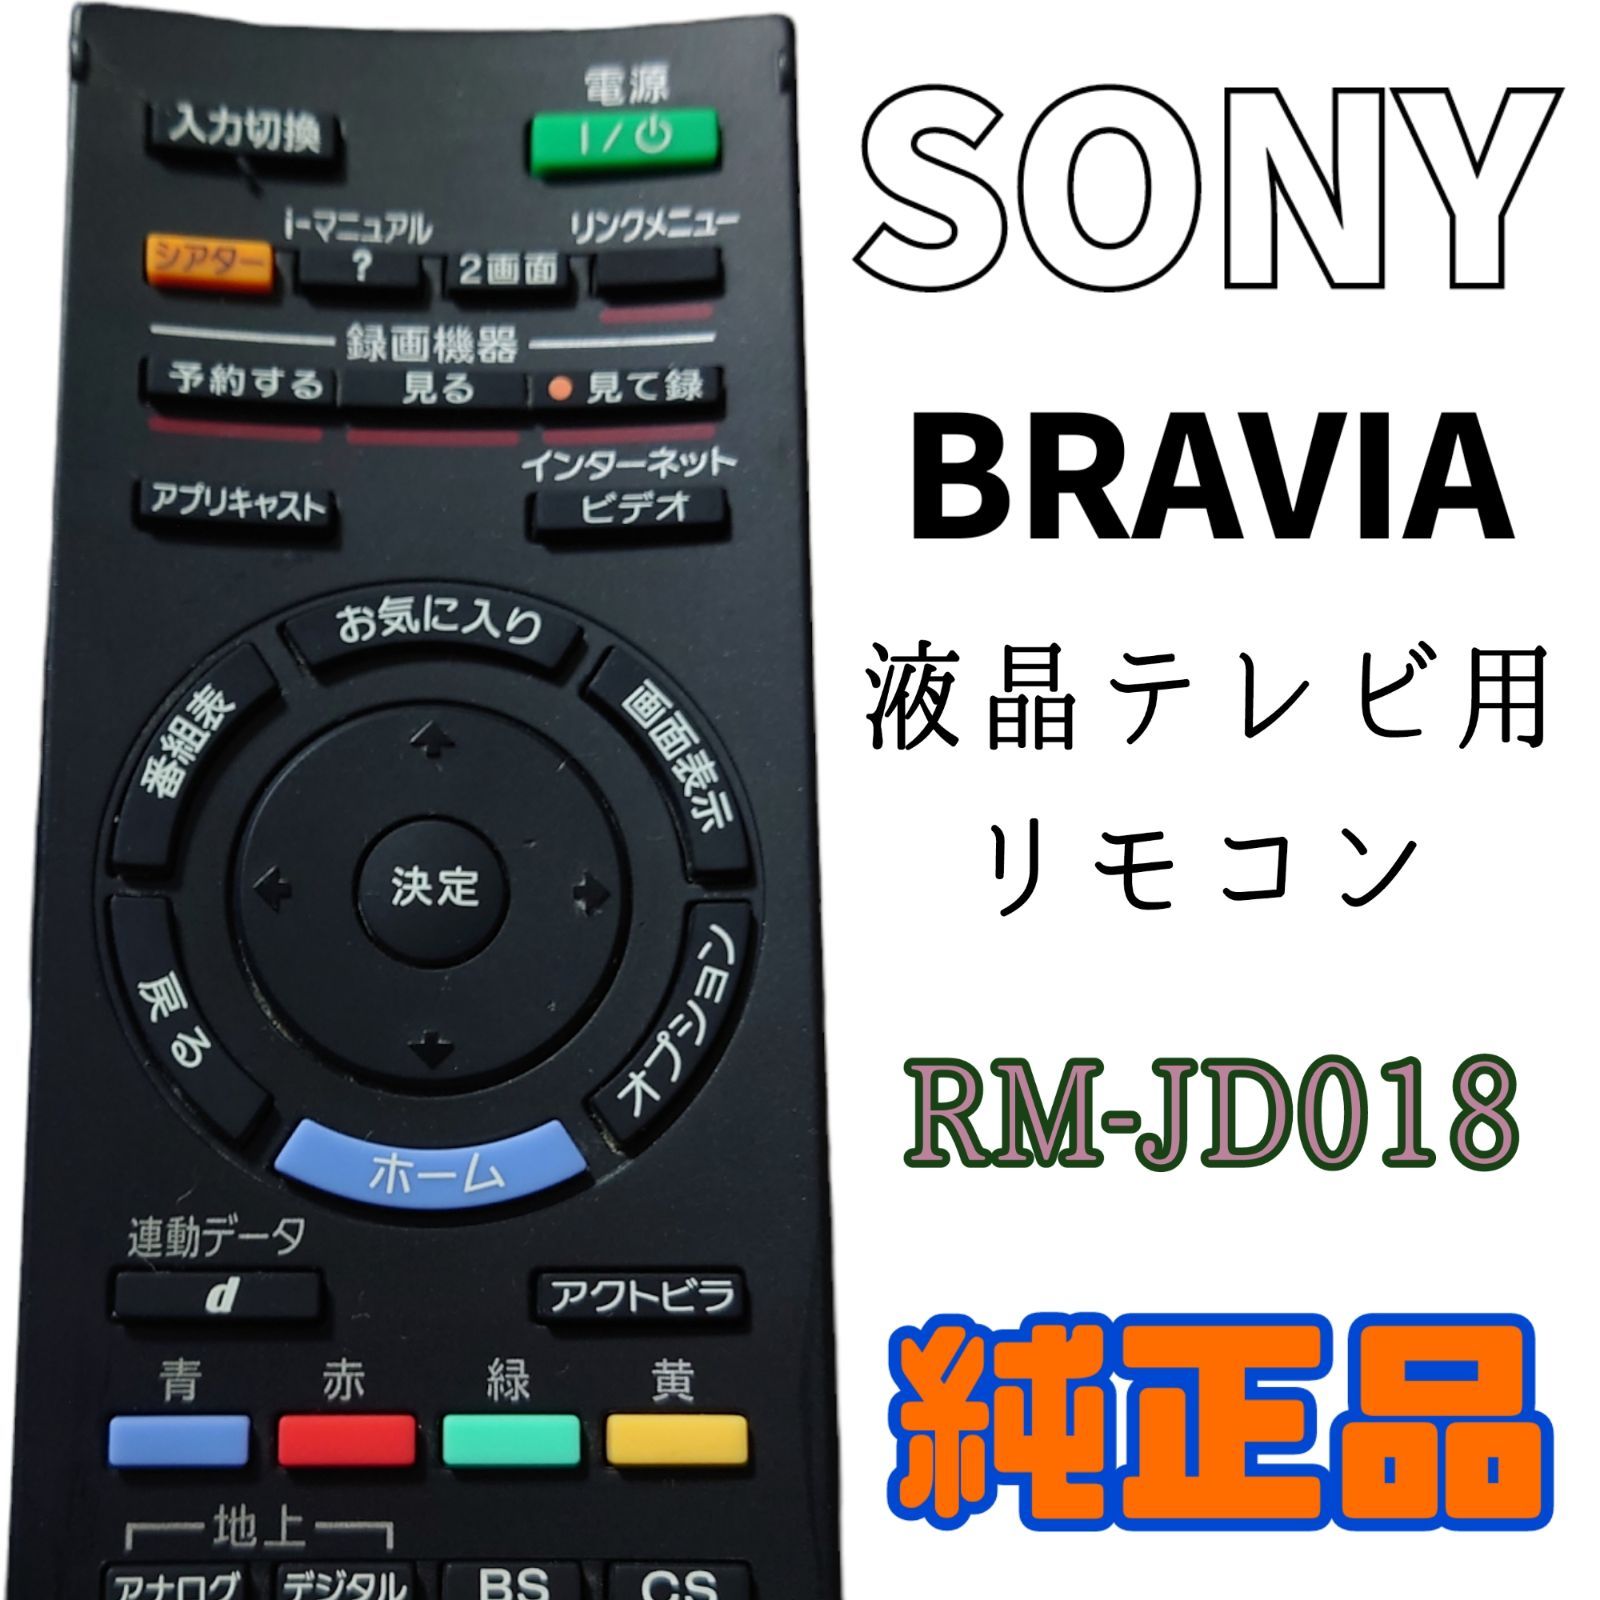 MA133】SONY☆BRAVIA 液晶テレビ用純正リモコン☆RM-JD018☆送料込☆ MONO+ メルカリ